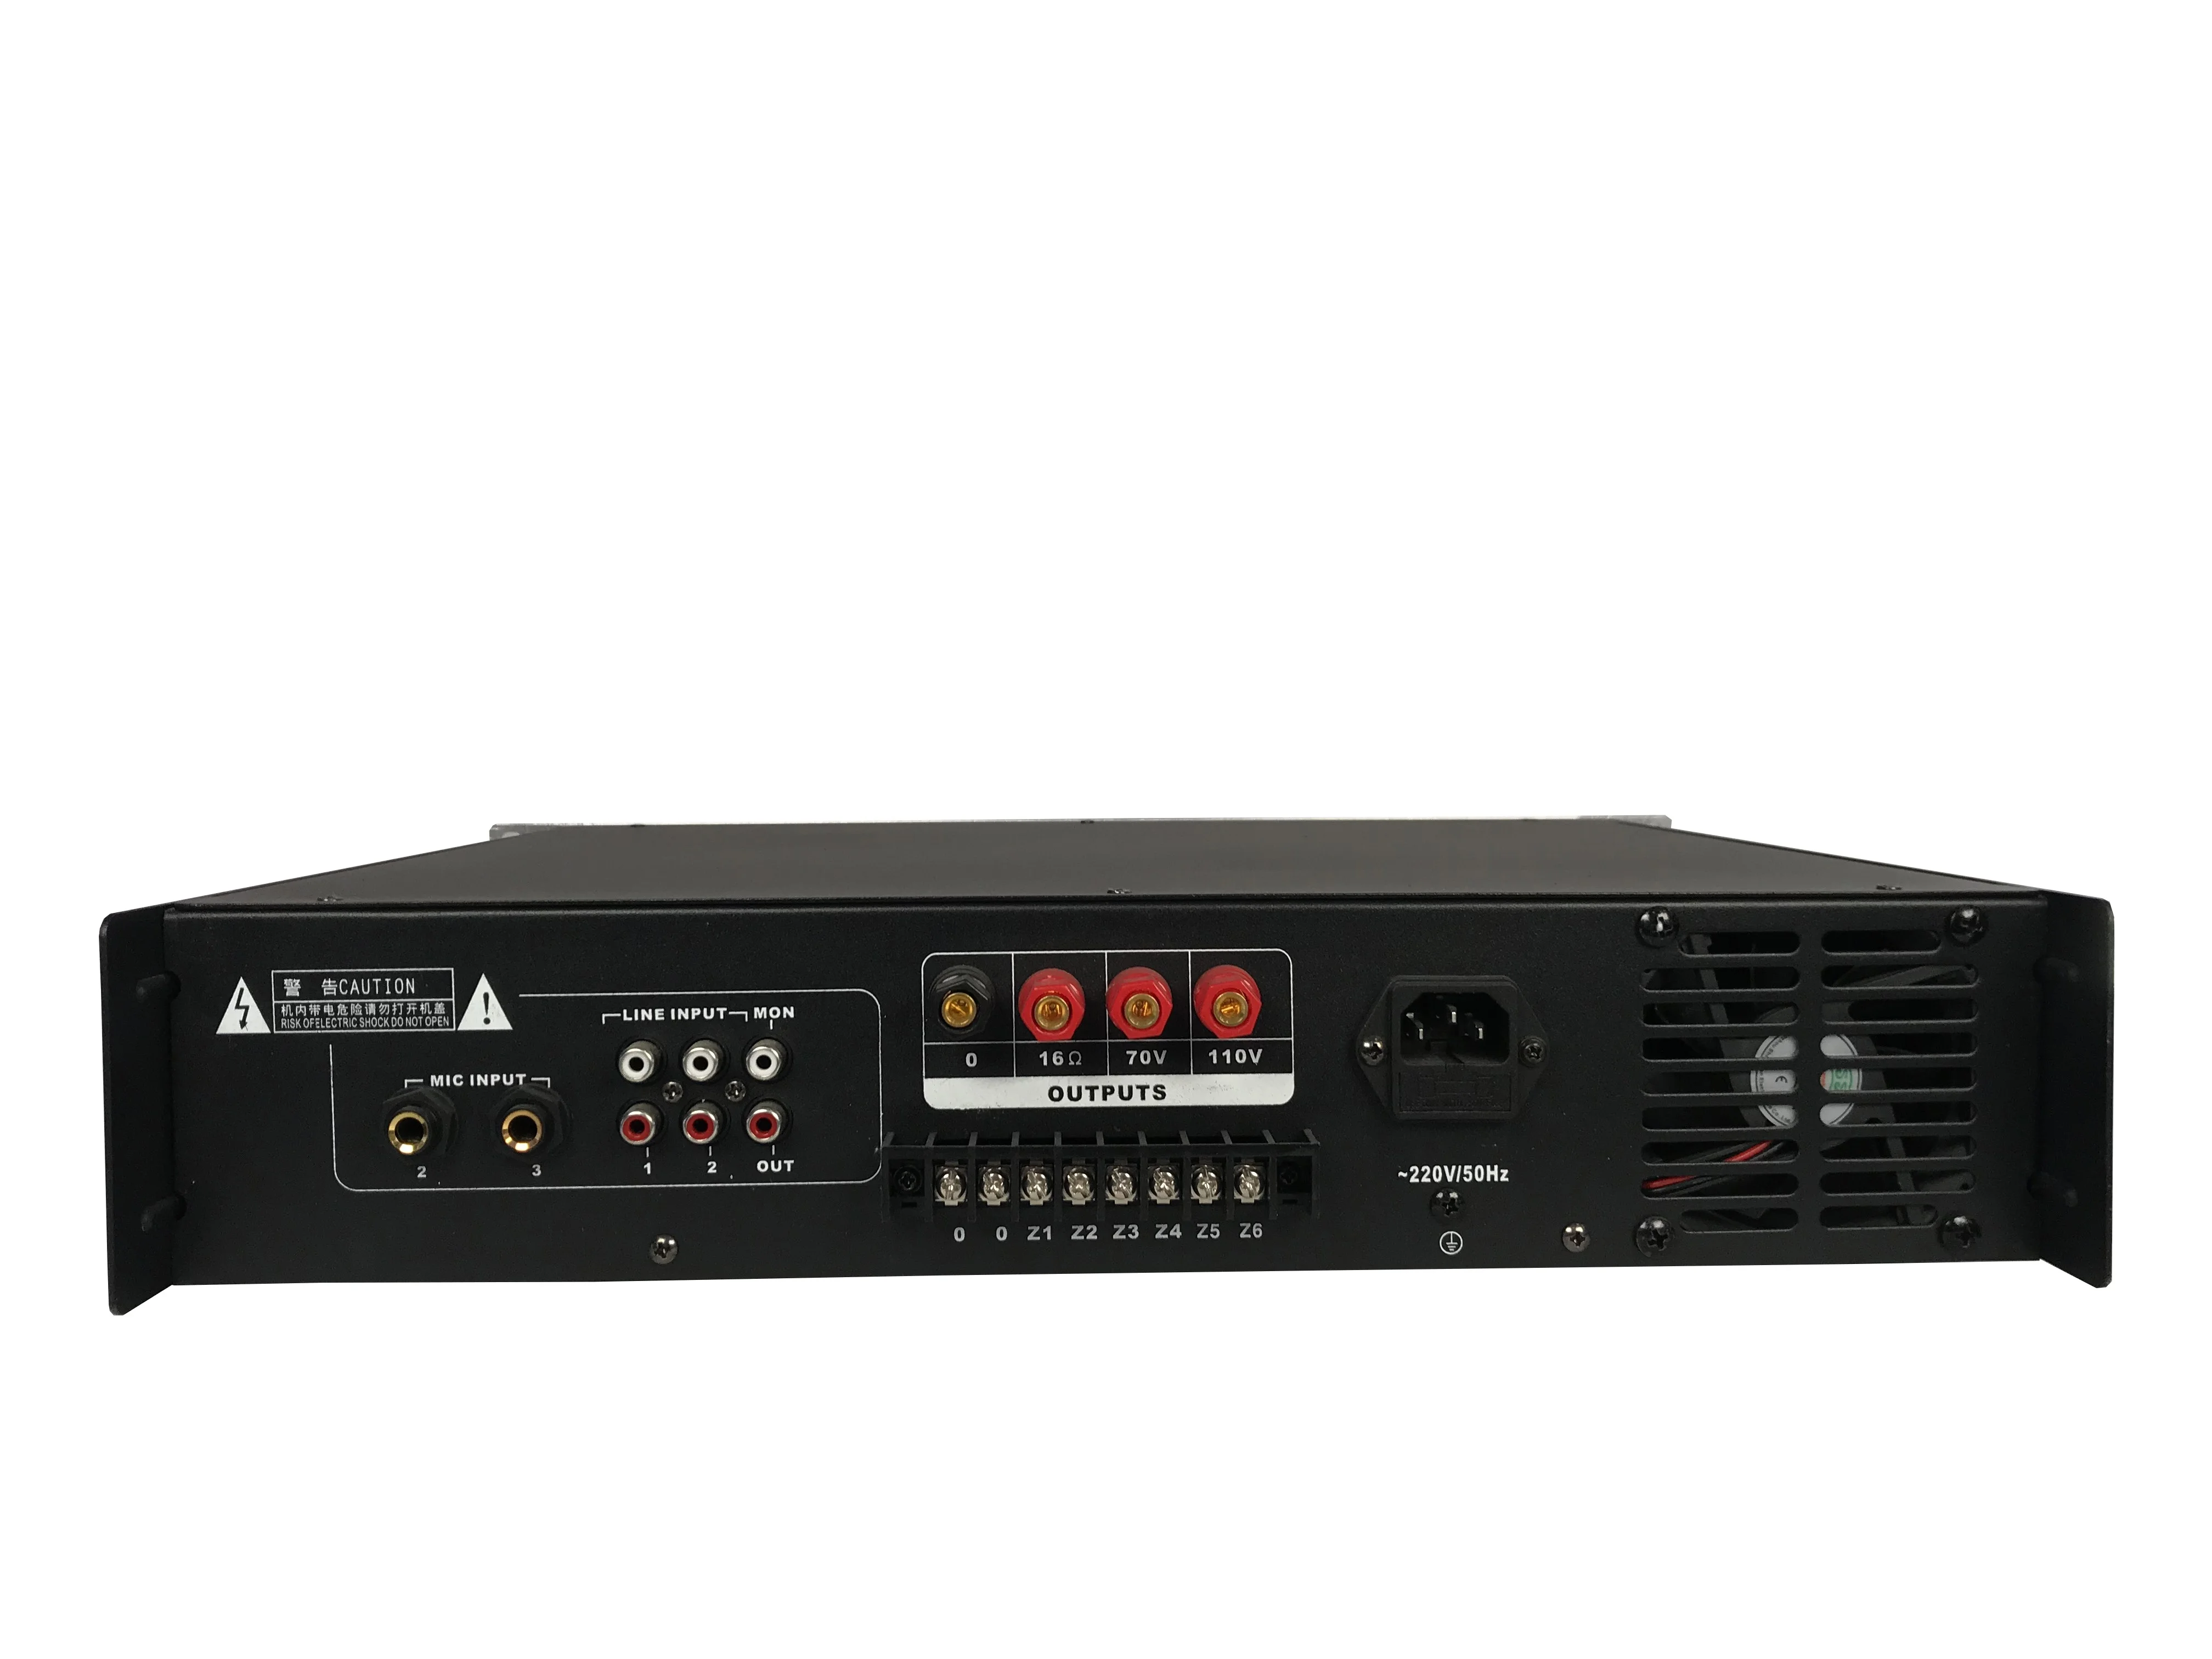 MP-USB60 60w PA Amplifier Using in Public Address System